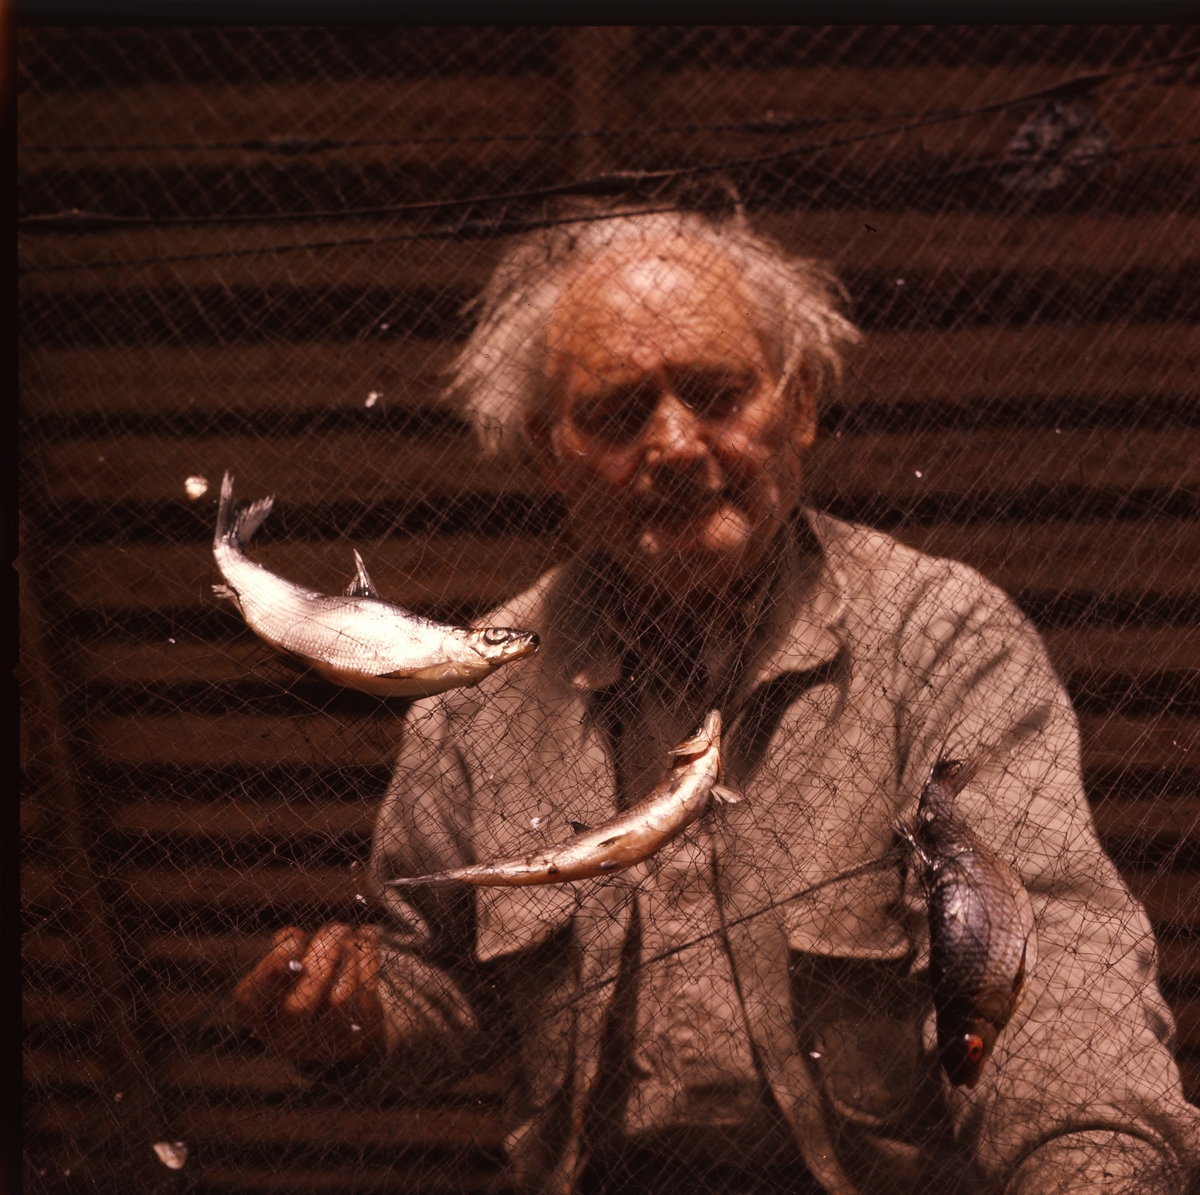 Albert Viksten sedd genom ett fiskenät. I nätet hänger flera fiskar.